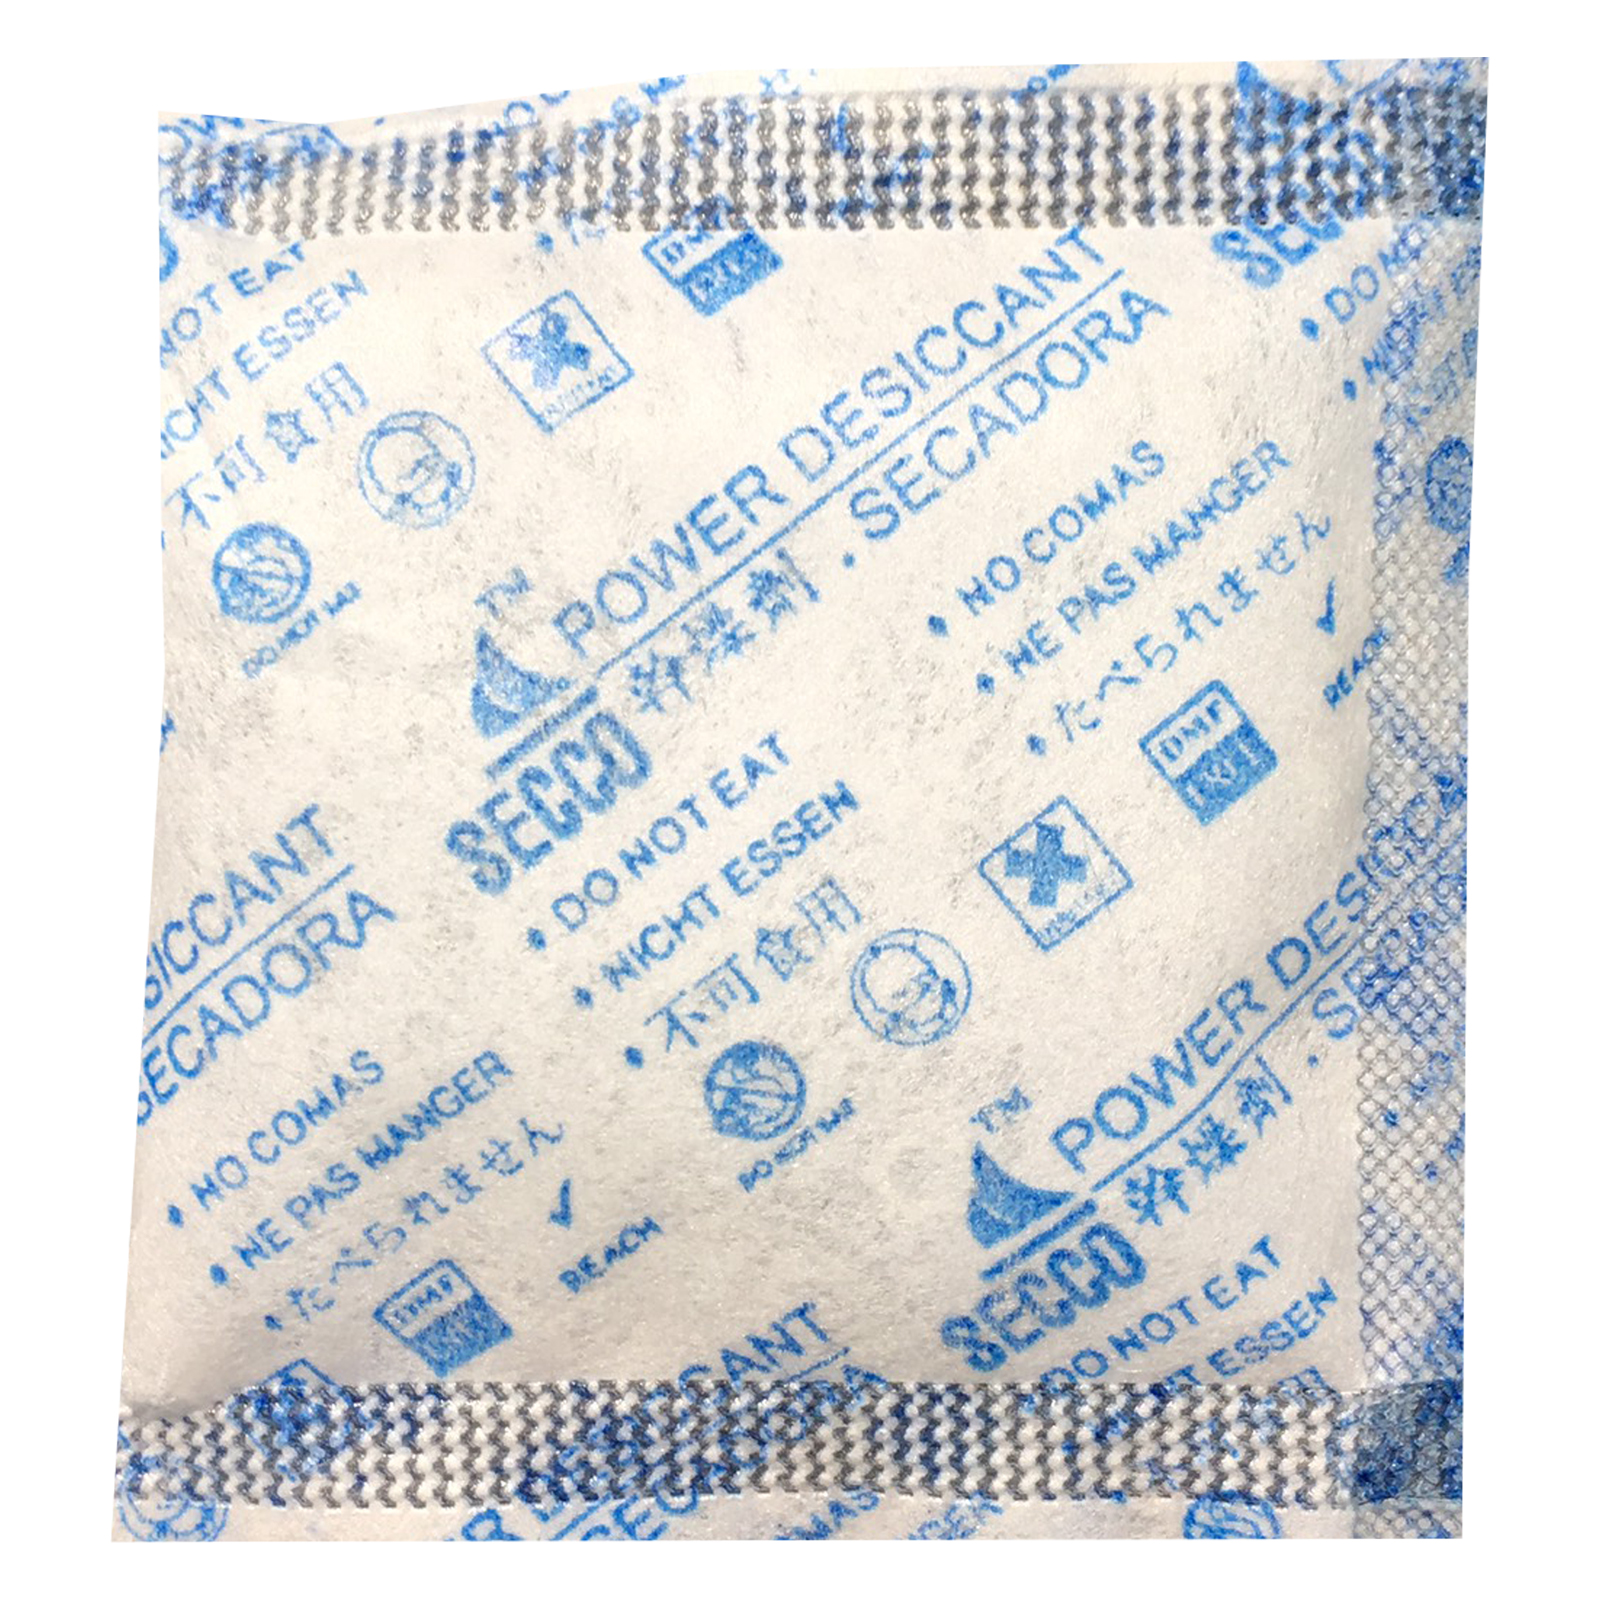 Túi hút ẩm Secco silica gel 5gr (khử mùi/hút ẩm)- 1kg (200 túi) - Chính hãng - Vải trắng - Chữ xanh logo